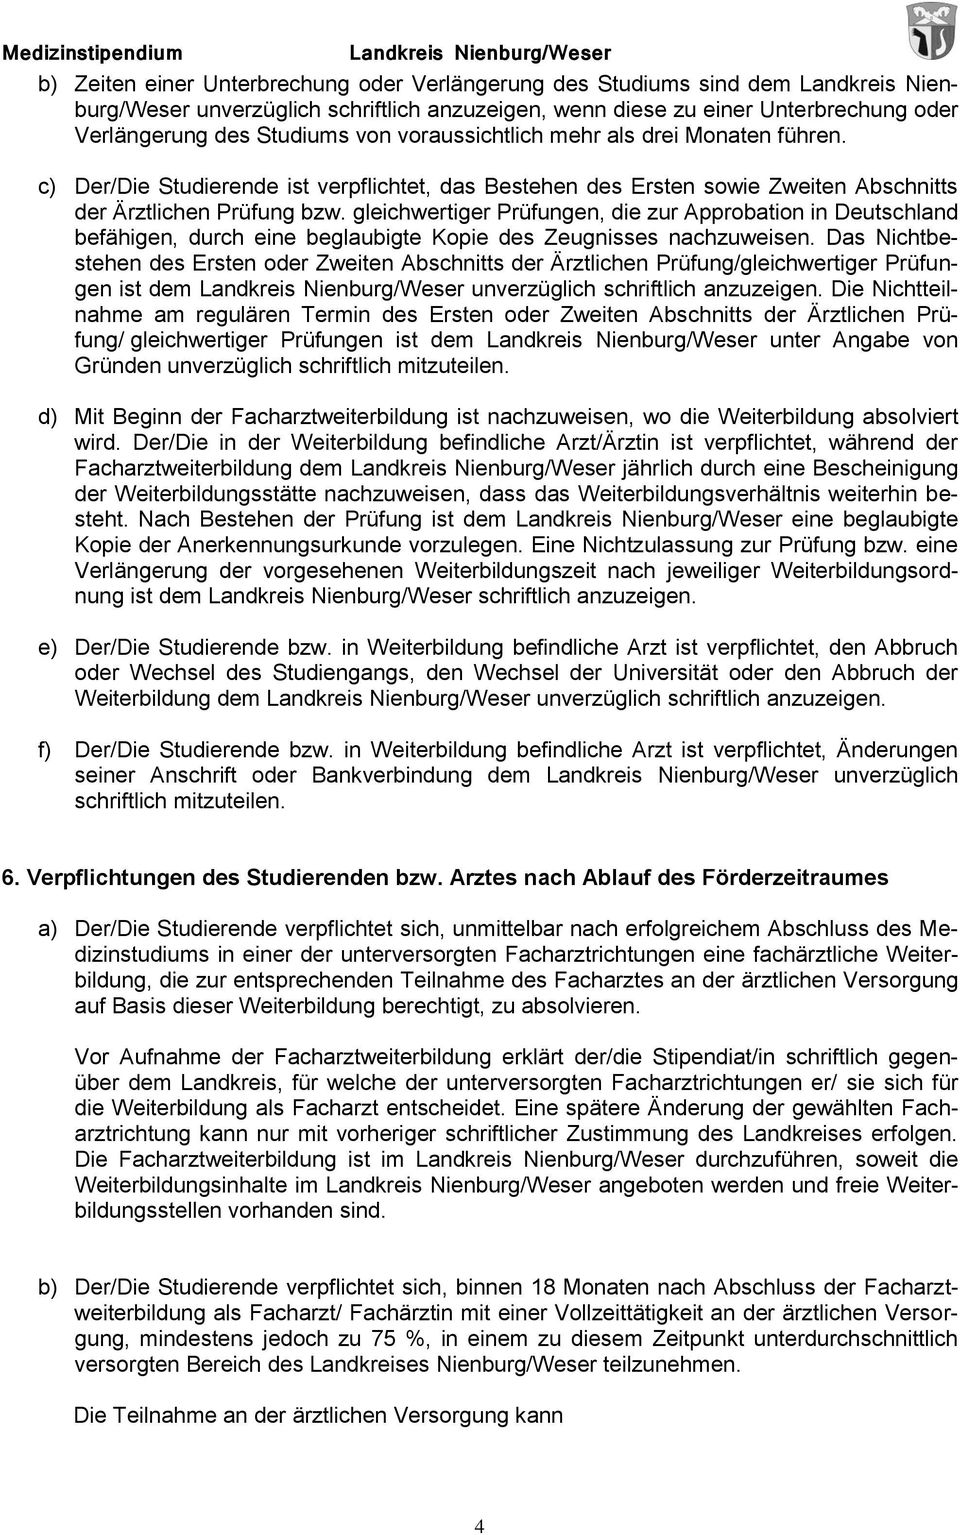 gleichwertiger Prüfungen, die zur Approbation in Deutschland befähigen, durch eine beglaubigte Kopie des Zeugnisses nachzuweisen.